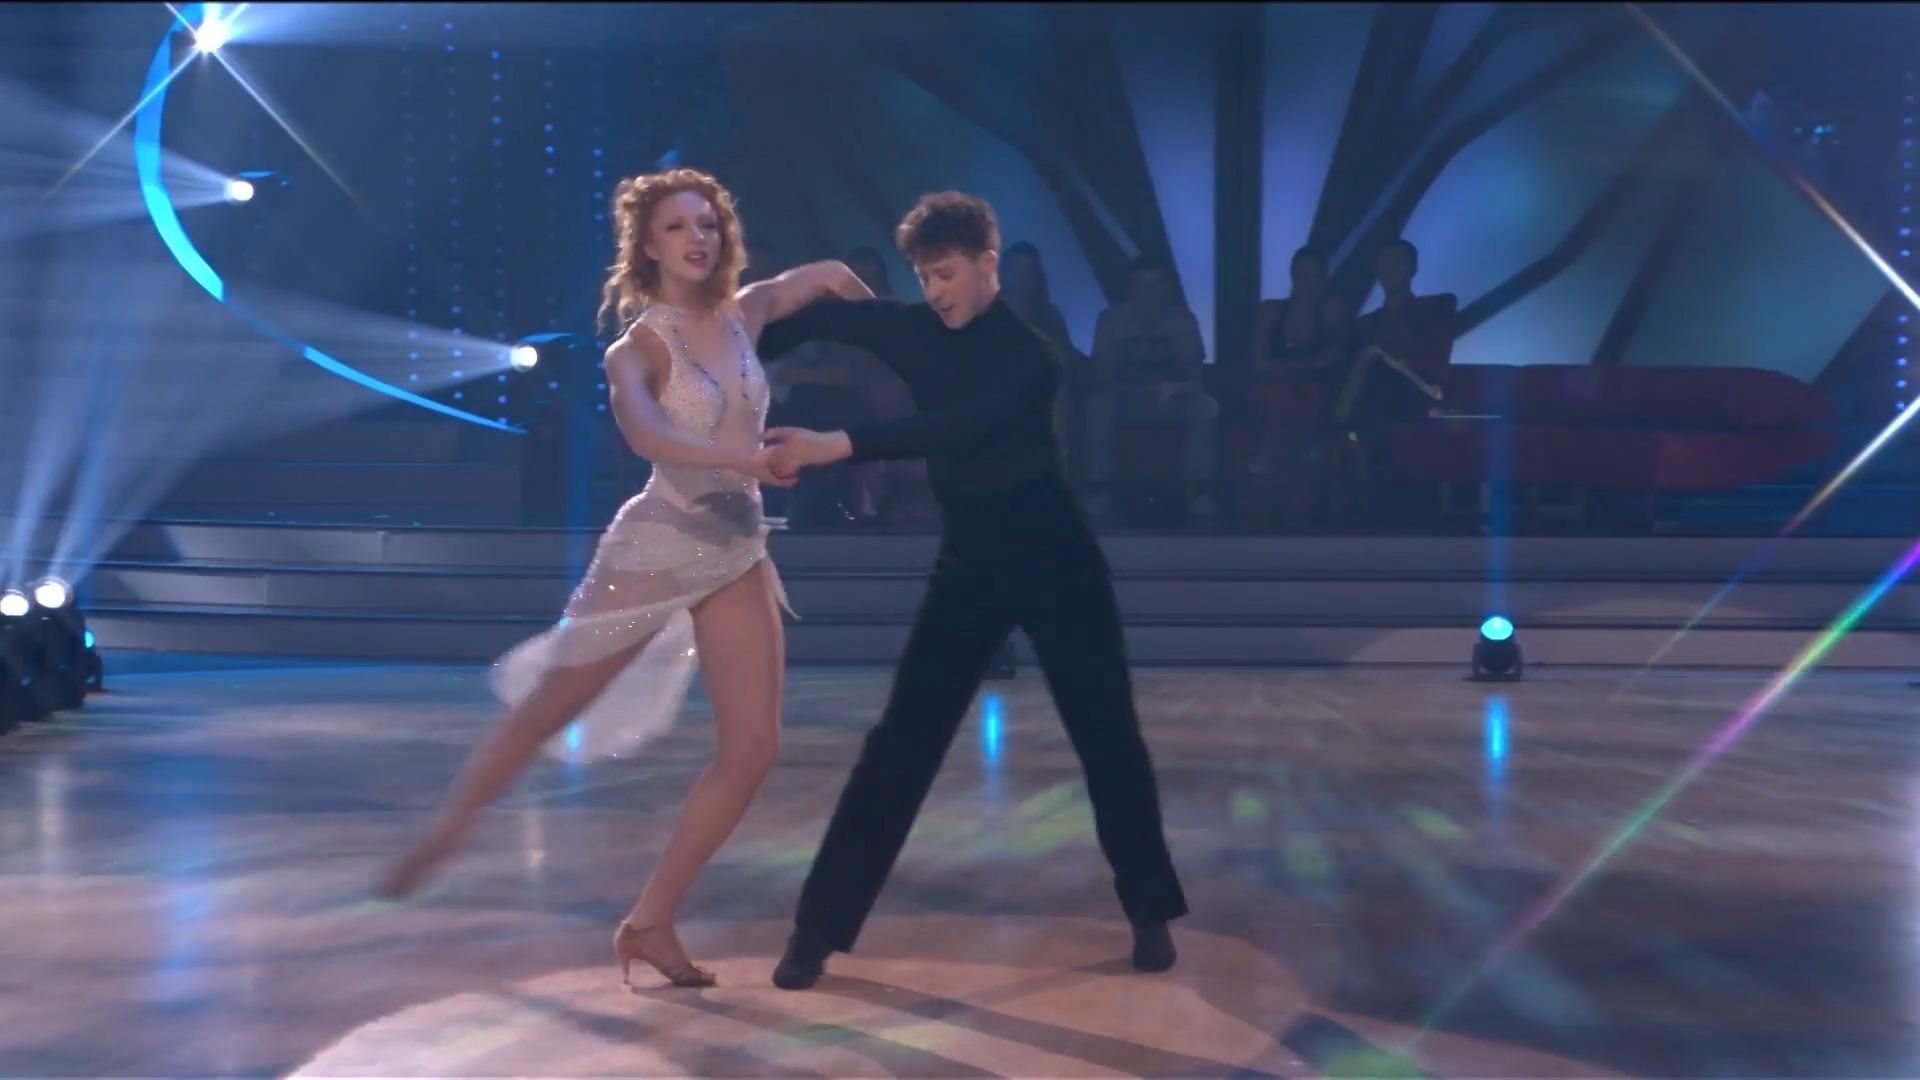 Questa è la ragione della danza improvvisata "più estremo" Anna Ermakova improvvisa "Balliamo"